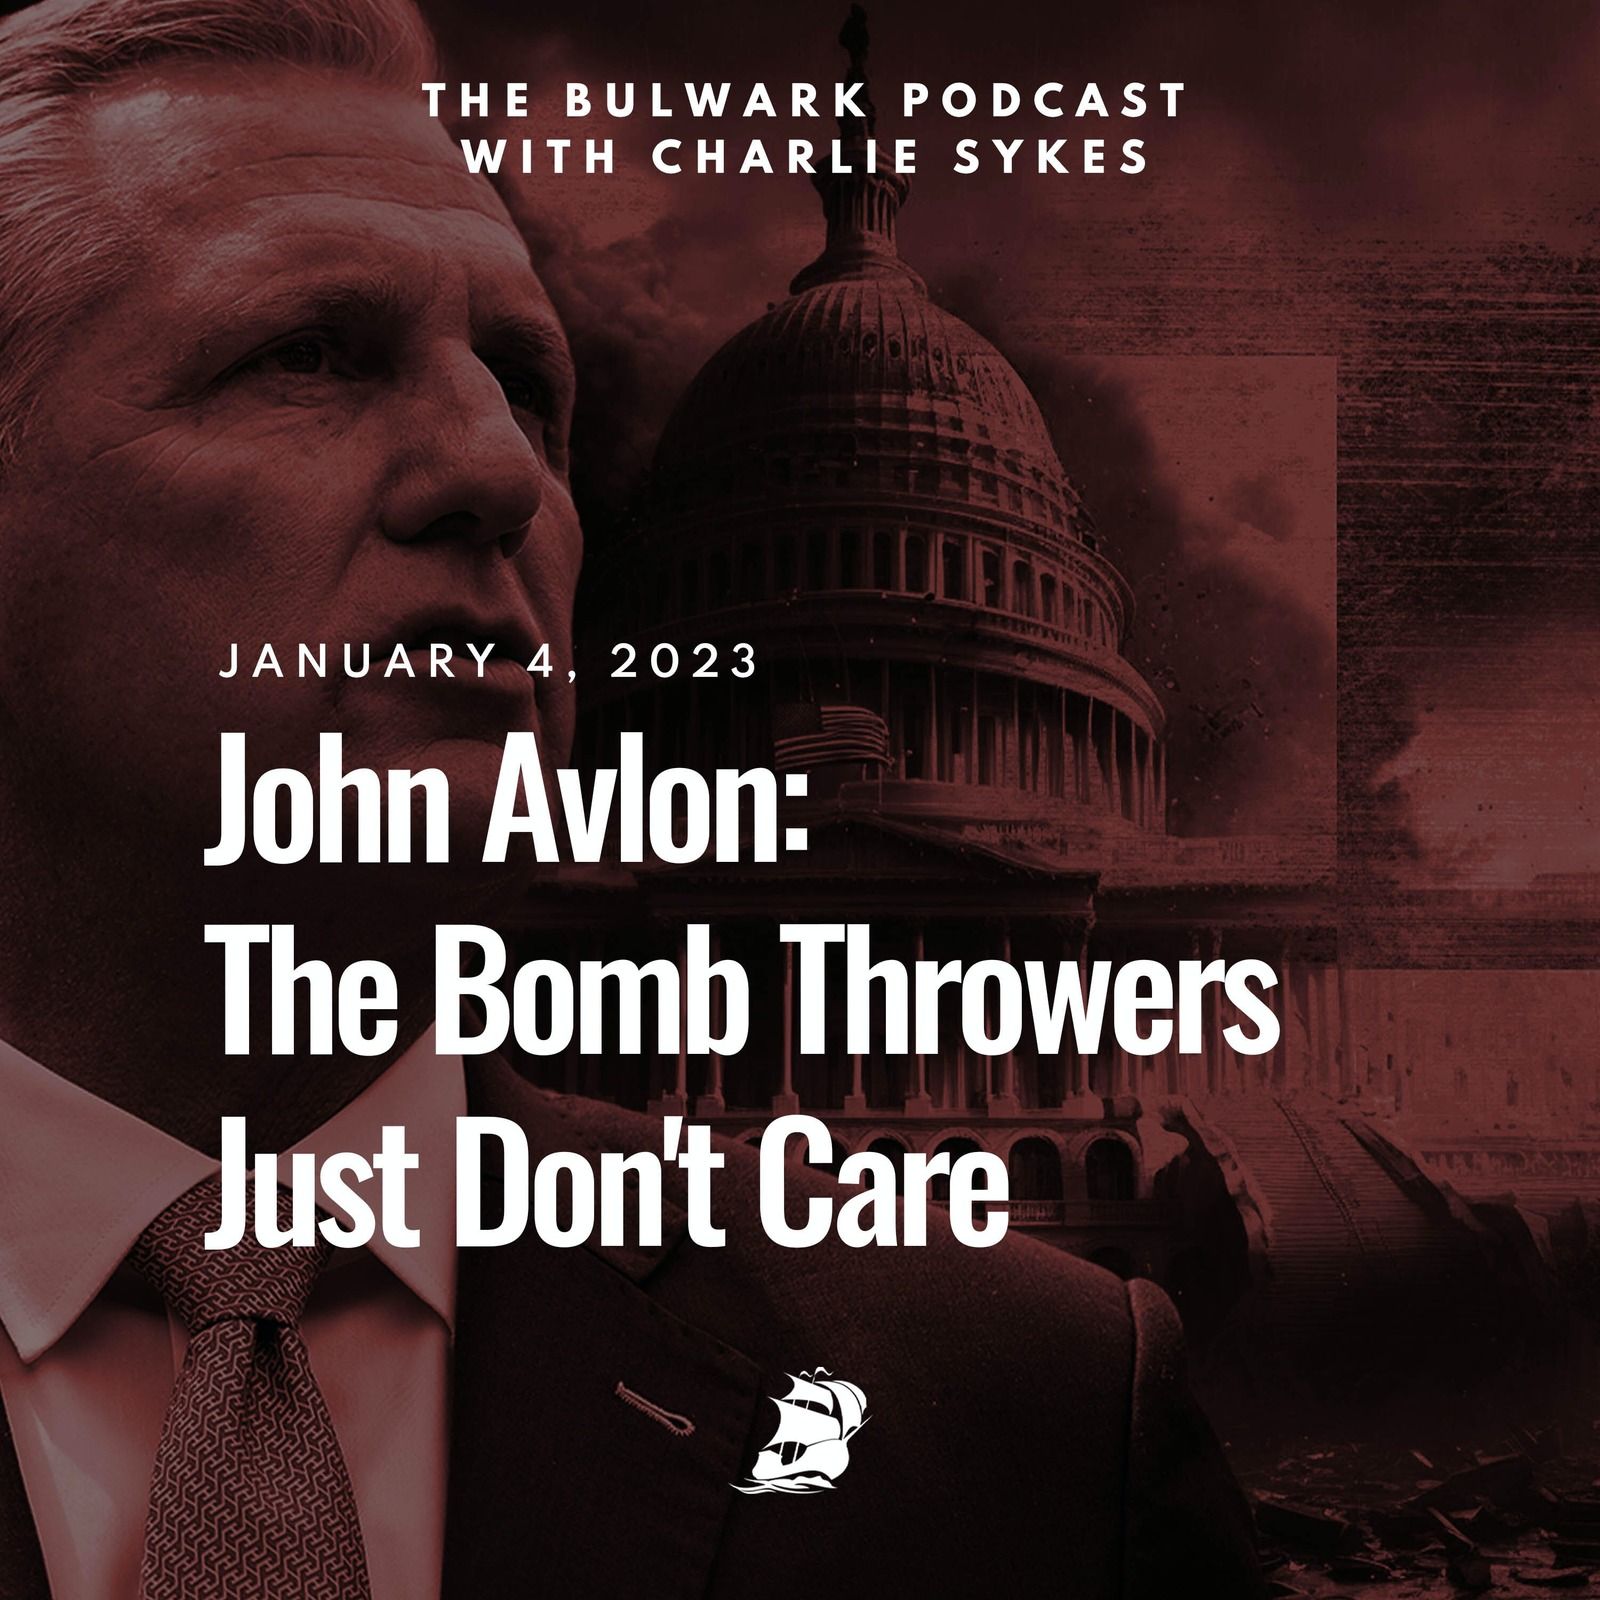 John Avlon: The Bomb Throwers Just Don't Care